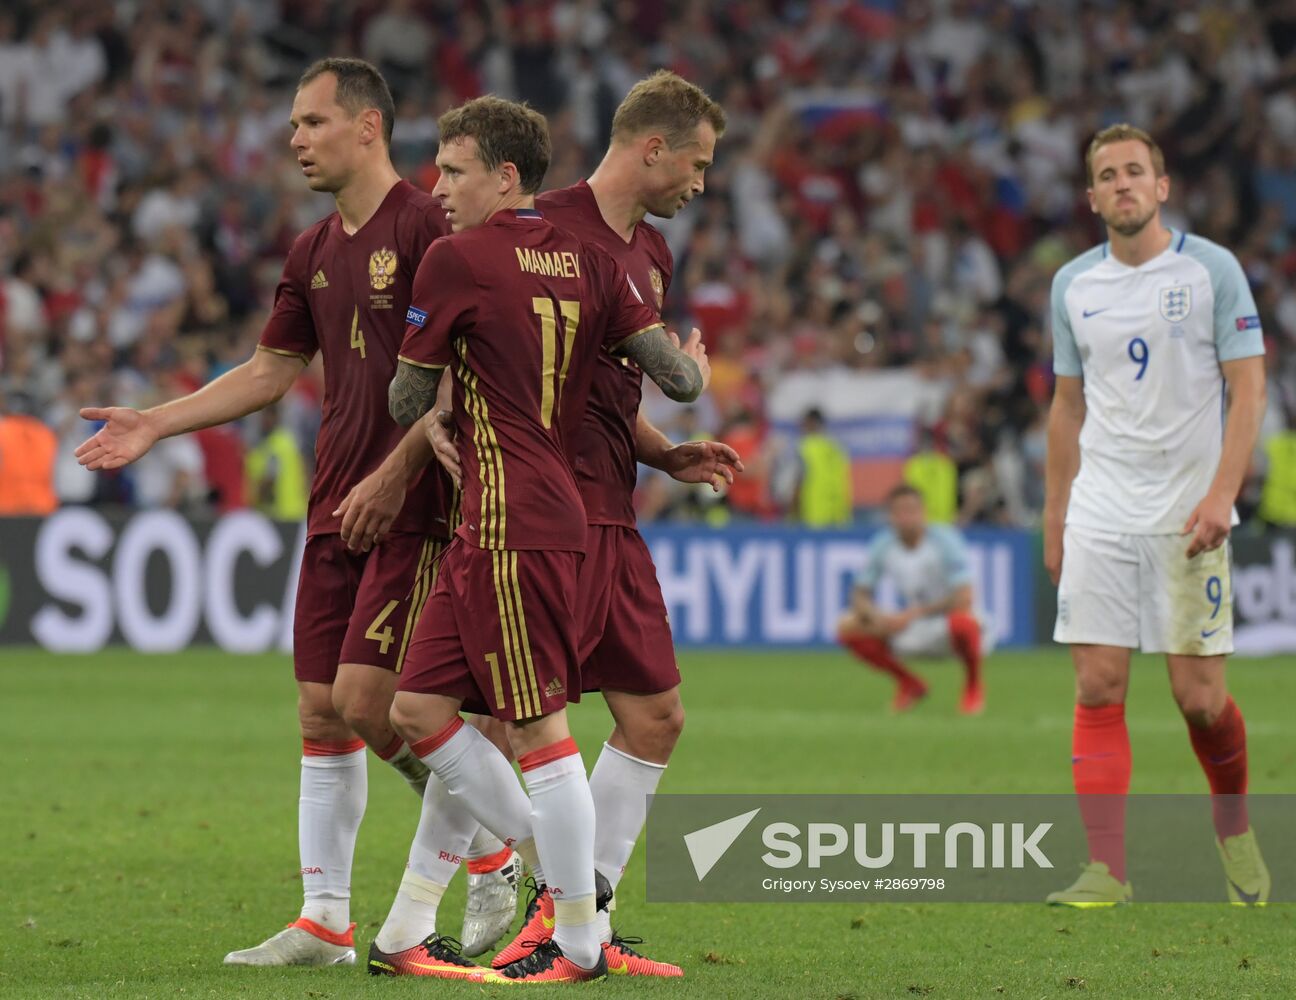 UEFA Euro 2016. England vs. Russia